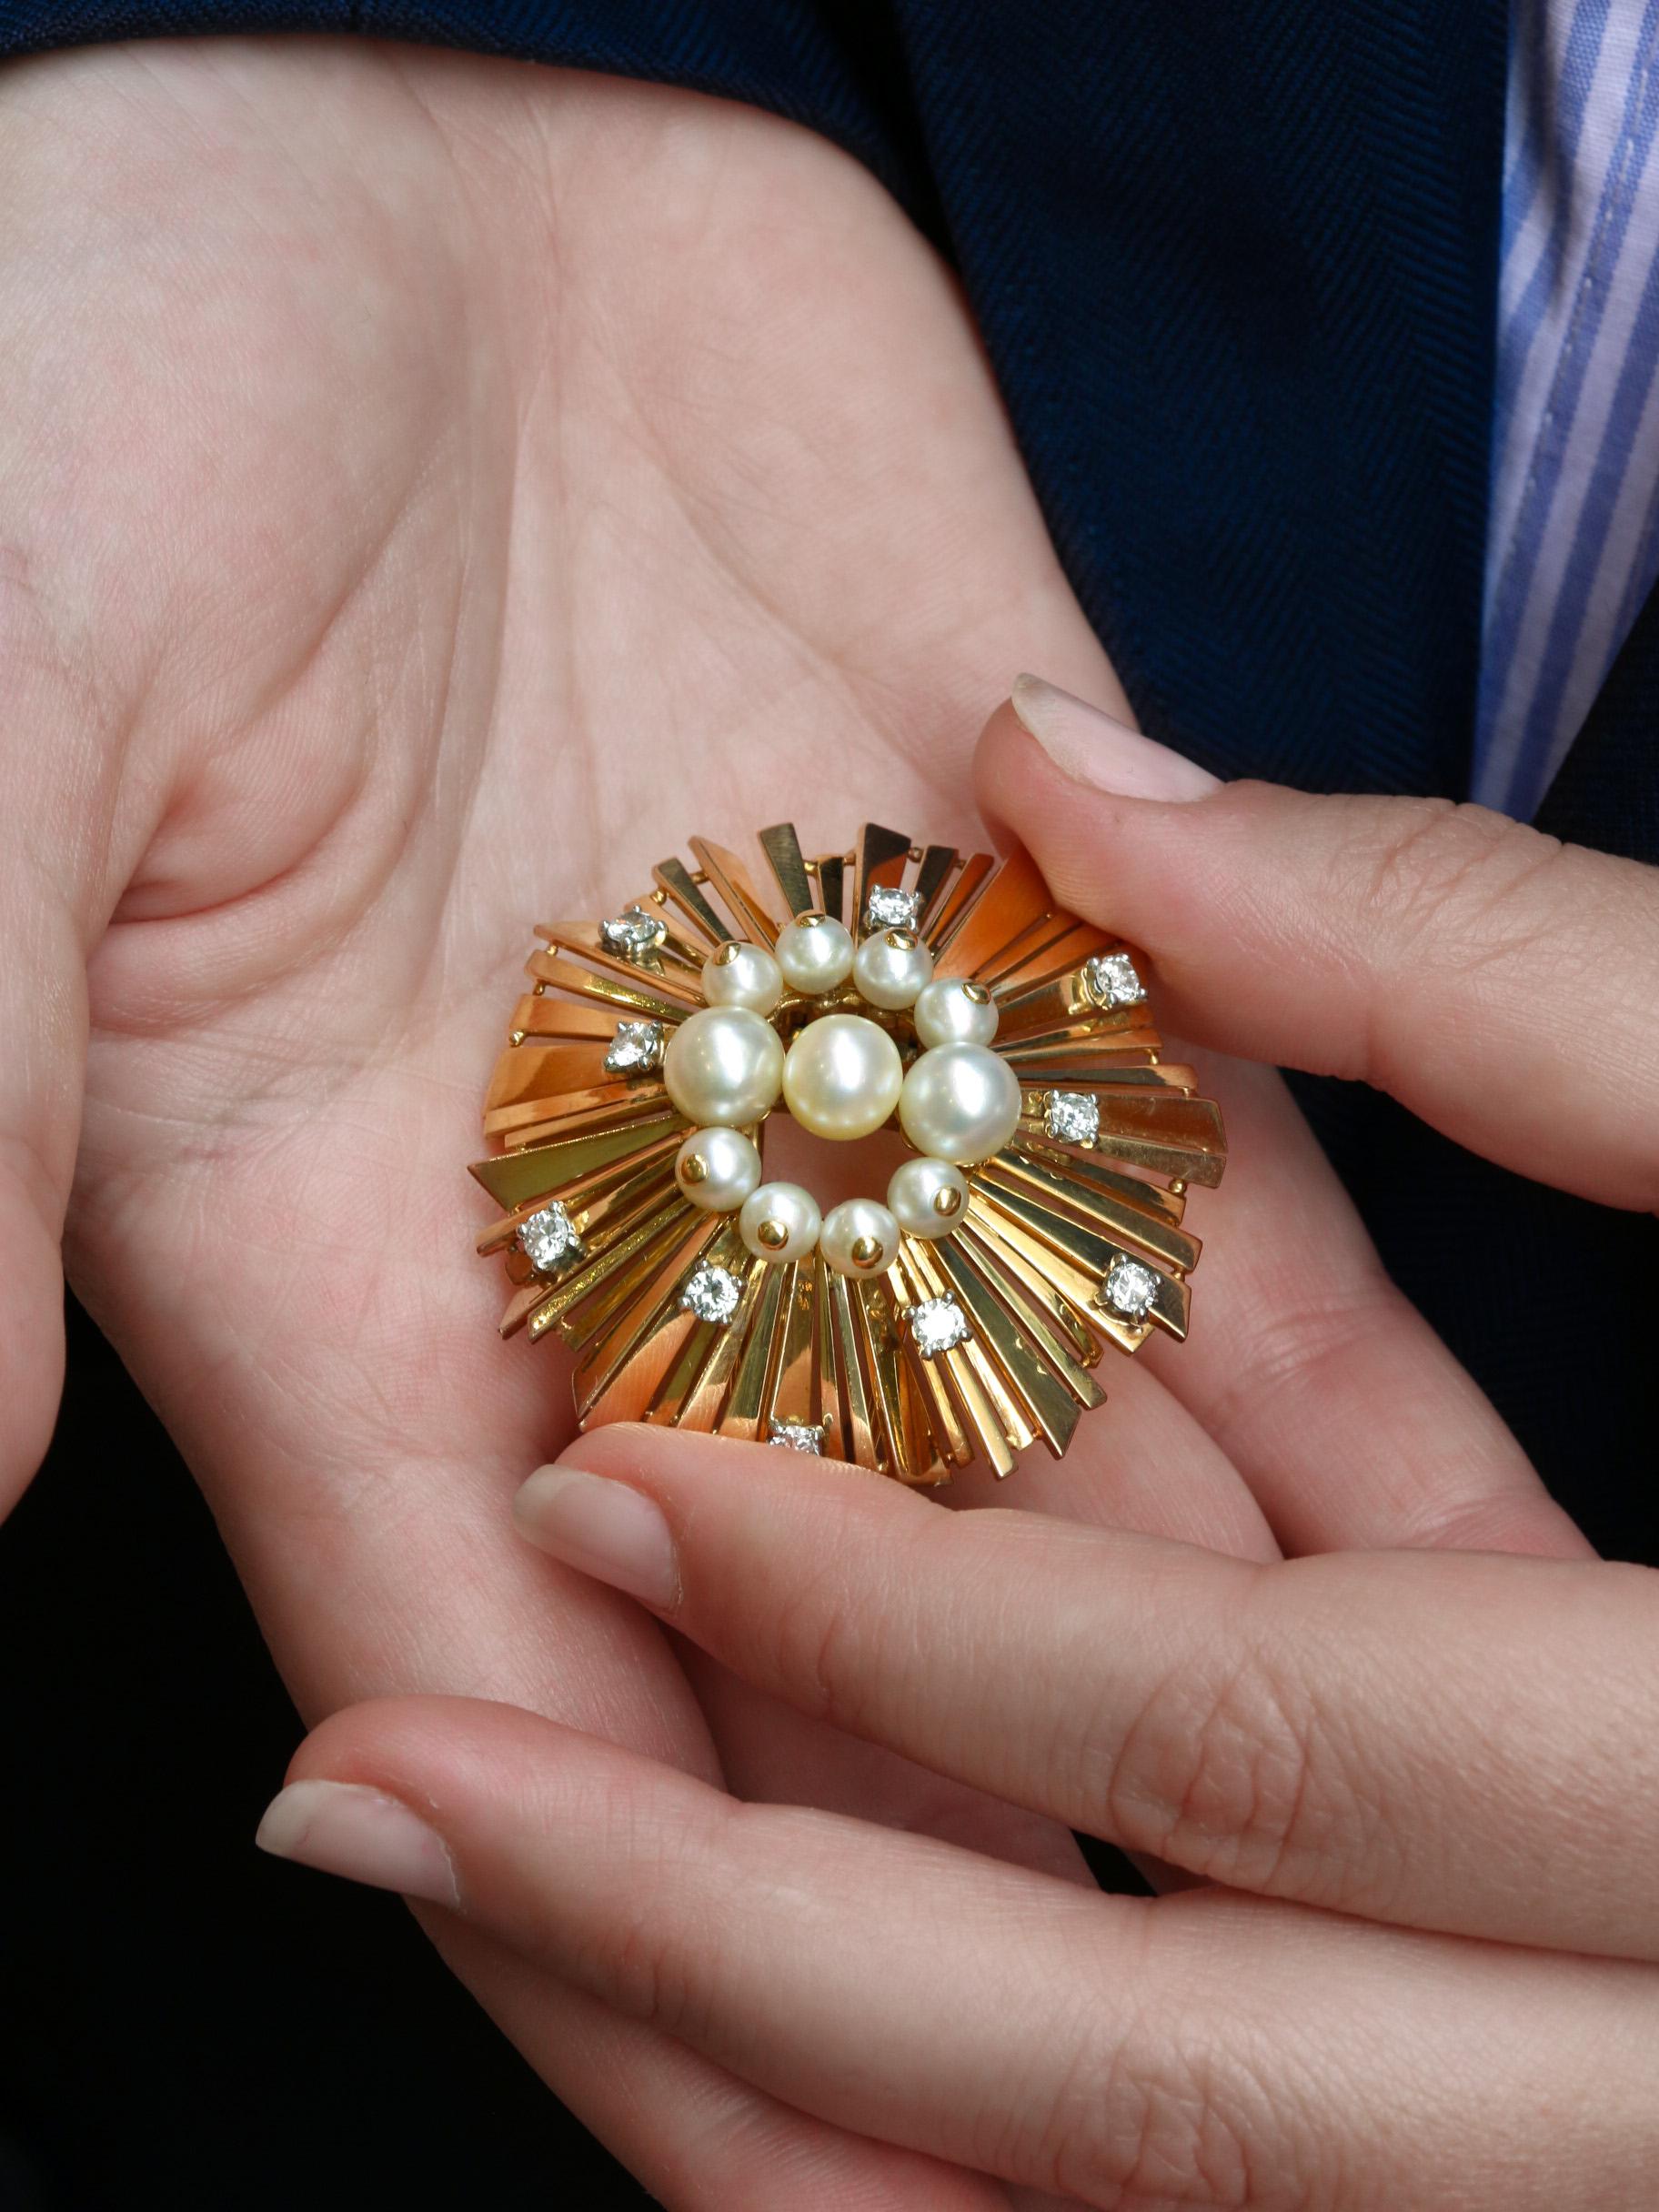 Cartier-Brosche aus 18 Karat Gold (750°/°°), besetzt mit Diamanten und Perlen. 
Die Brosche, die eine Sonne darstellt, besteht aus unterschiedlich großen Strahlen und wird von drei größeren Knopfperlen und vier kleineren Perlen, die von einem